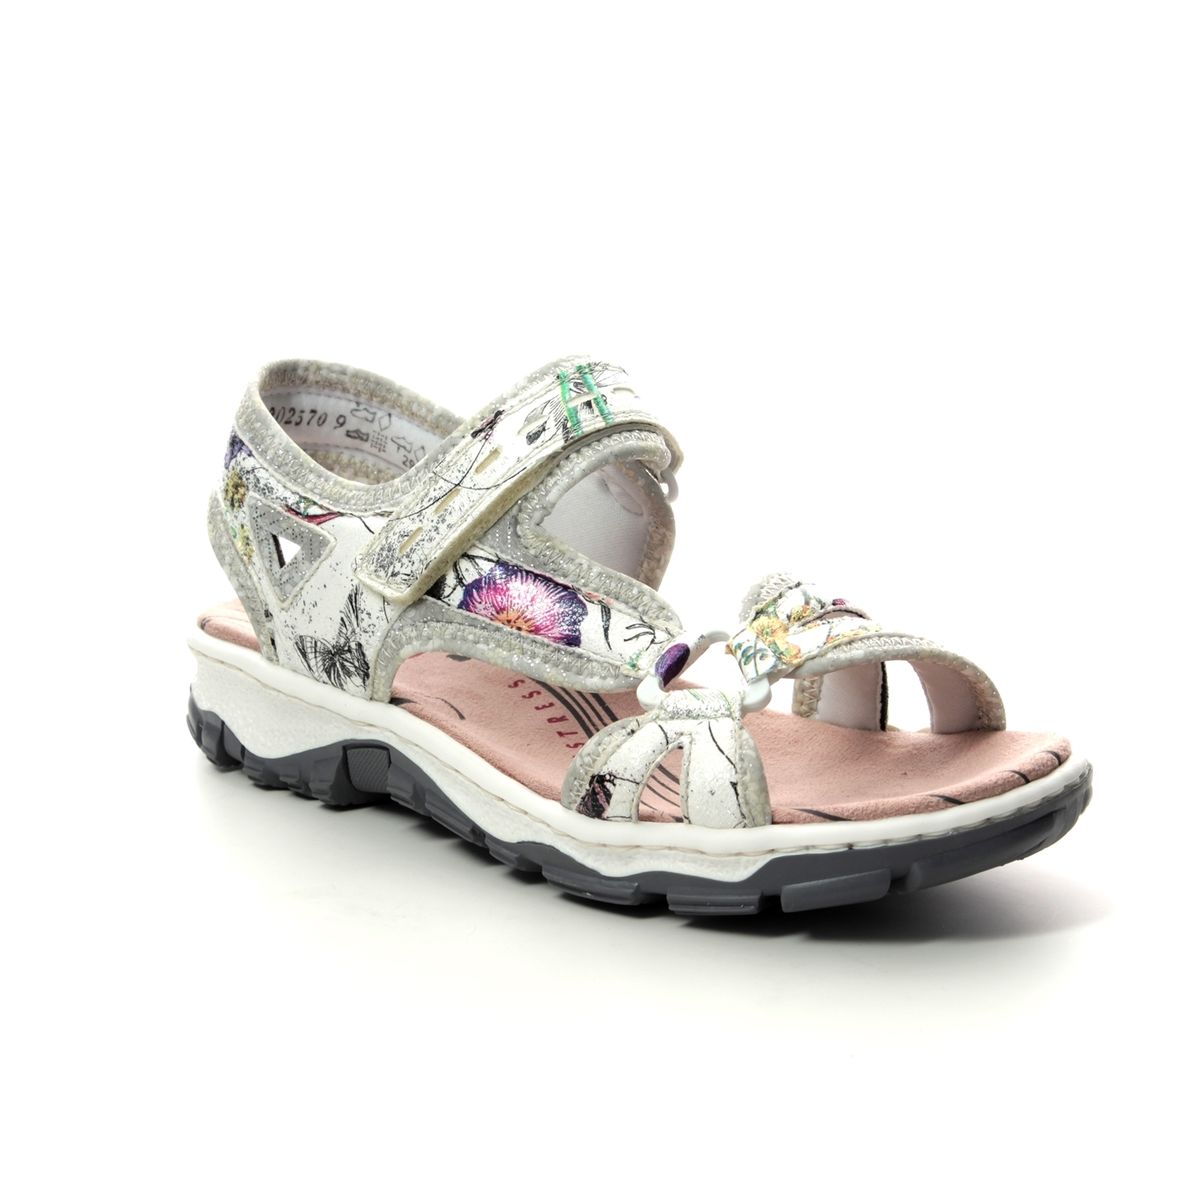 rieker floral sandals